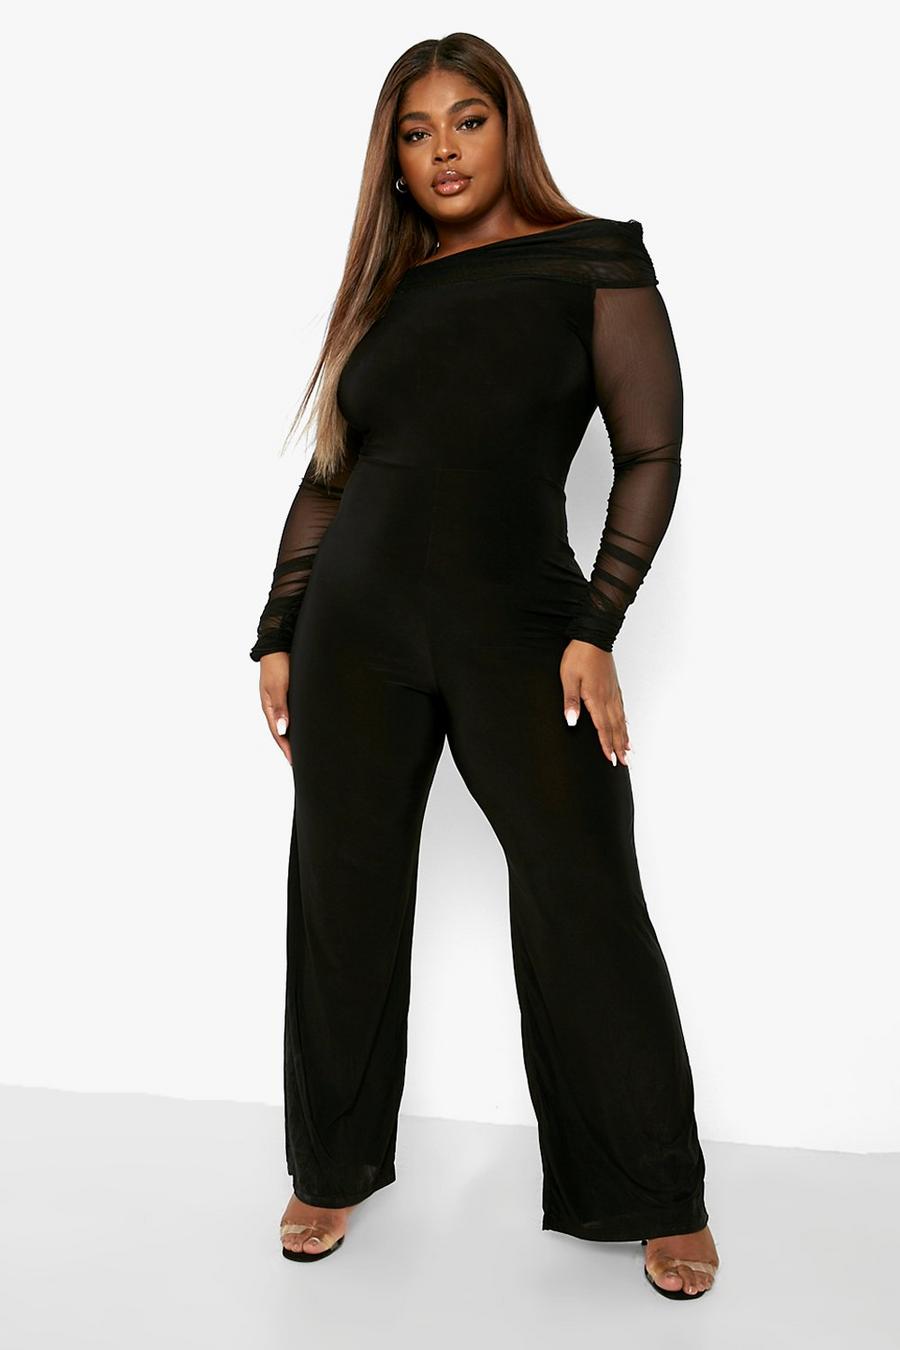 Plus Size - Bodysuit - Mesh & Lace Black - Torrid